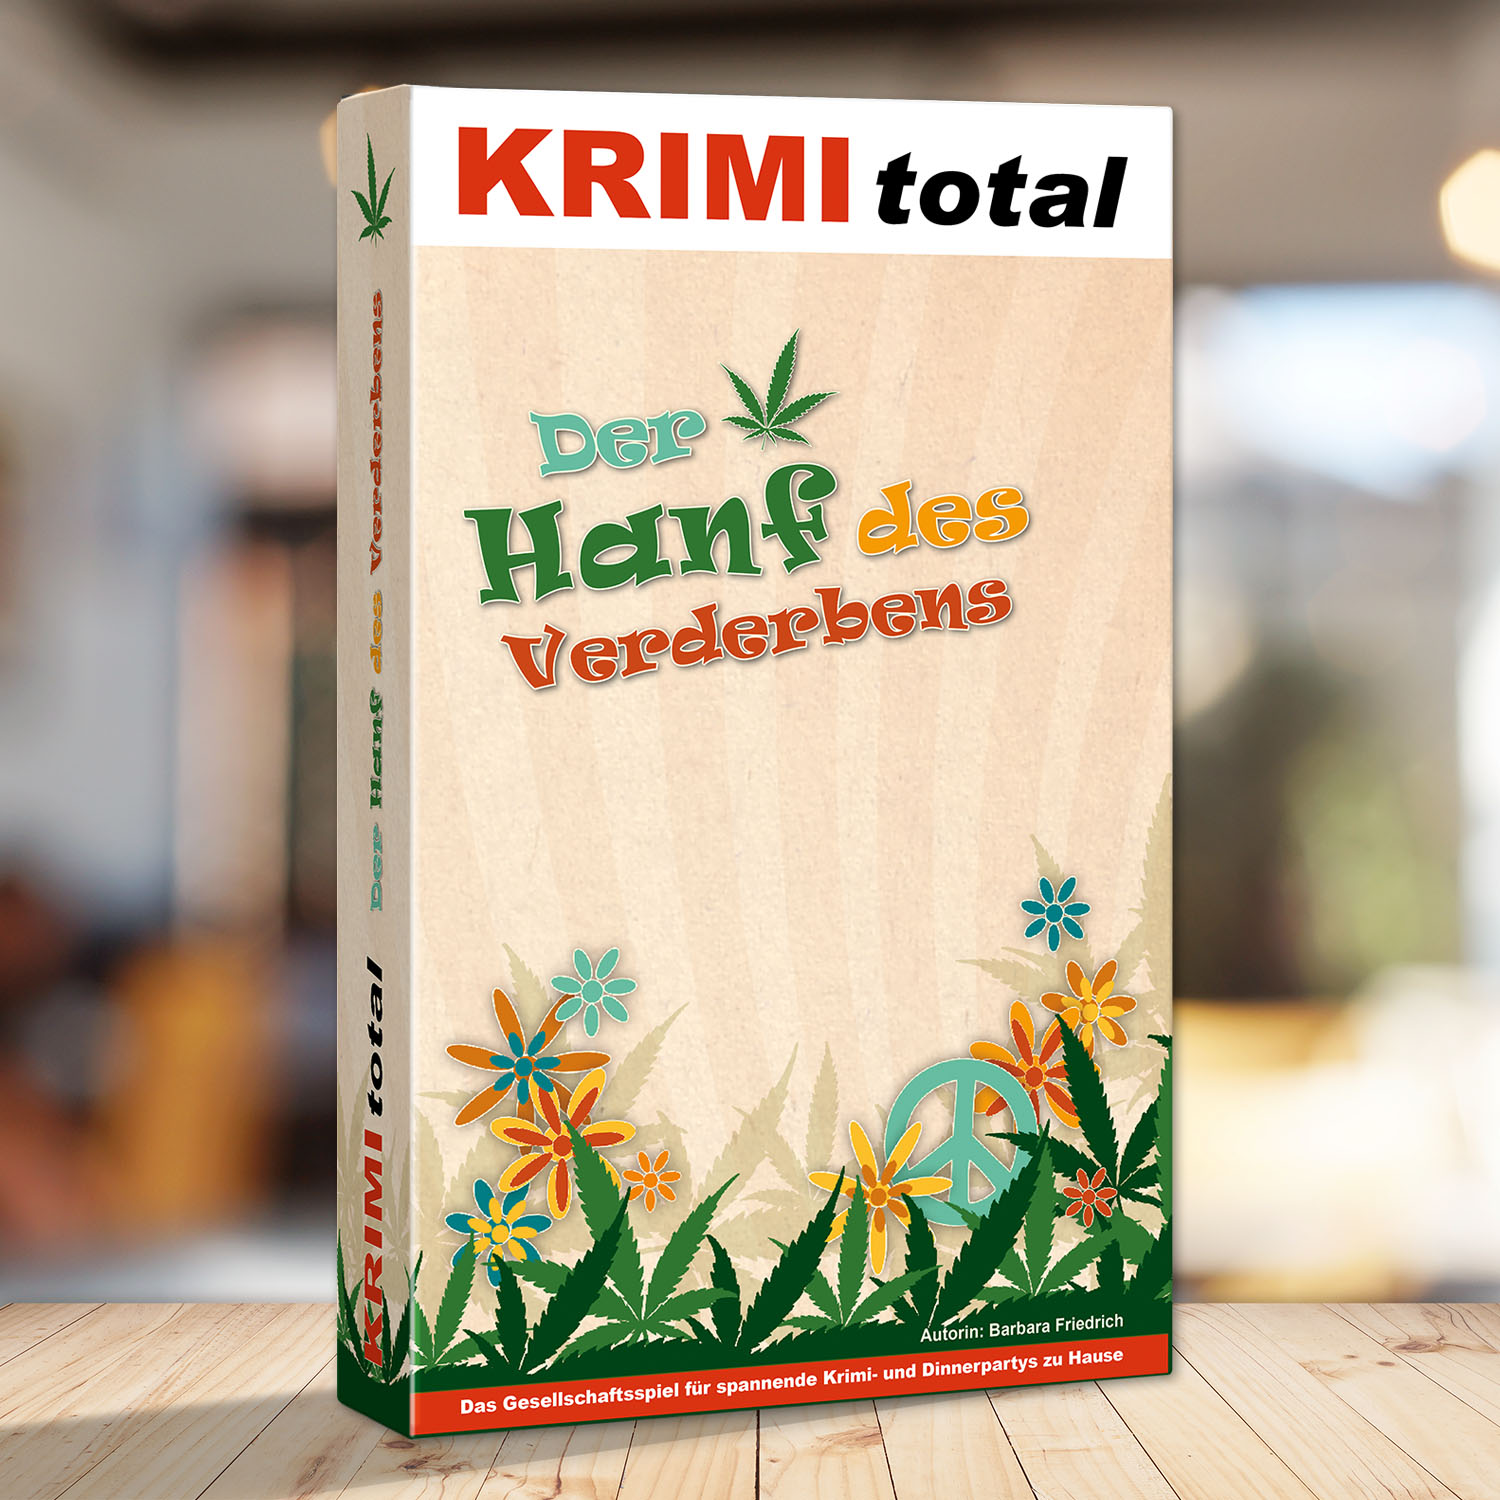 Abbildung eines Spielkartons des Krimidinner Spiels "KRIMI total - Der Hanf des Verderbens"